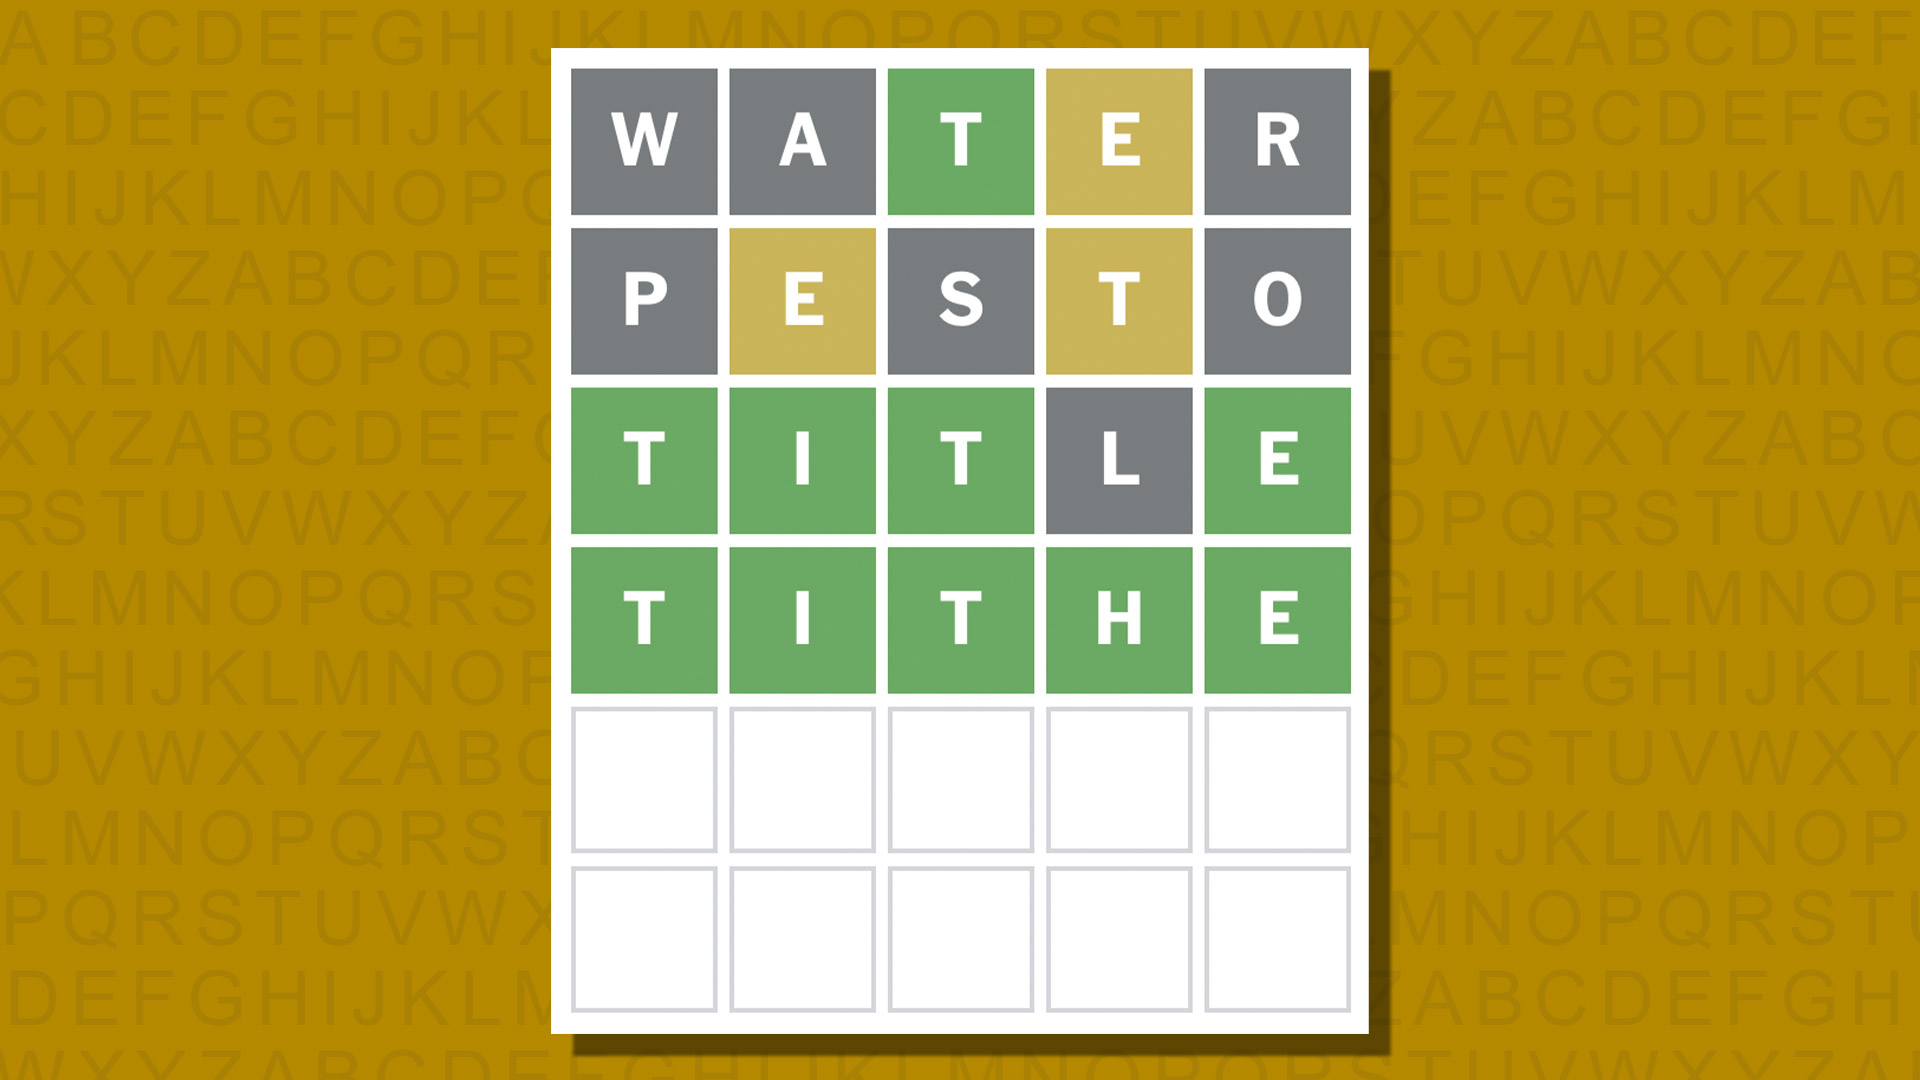 Ответ в формате Word для игры 1033 на желтом фоне